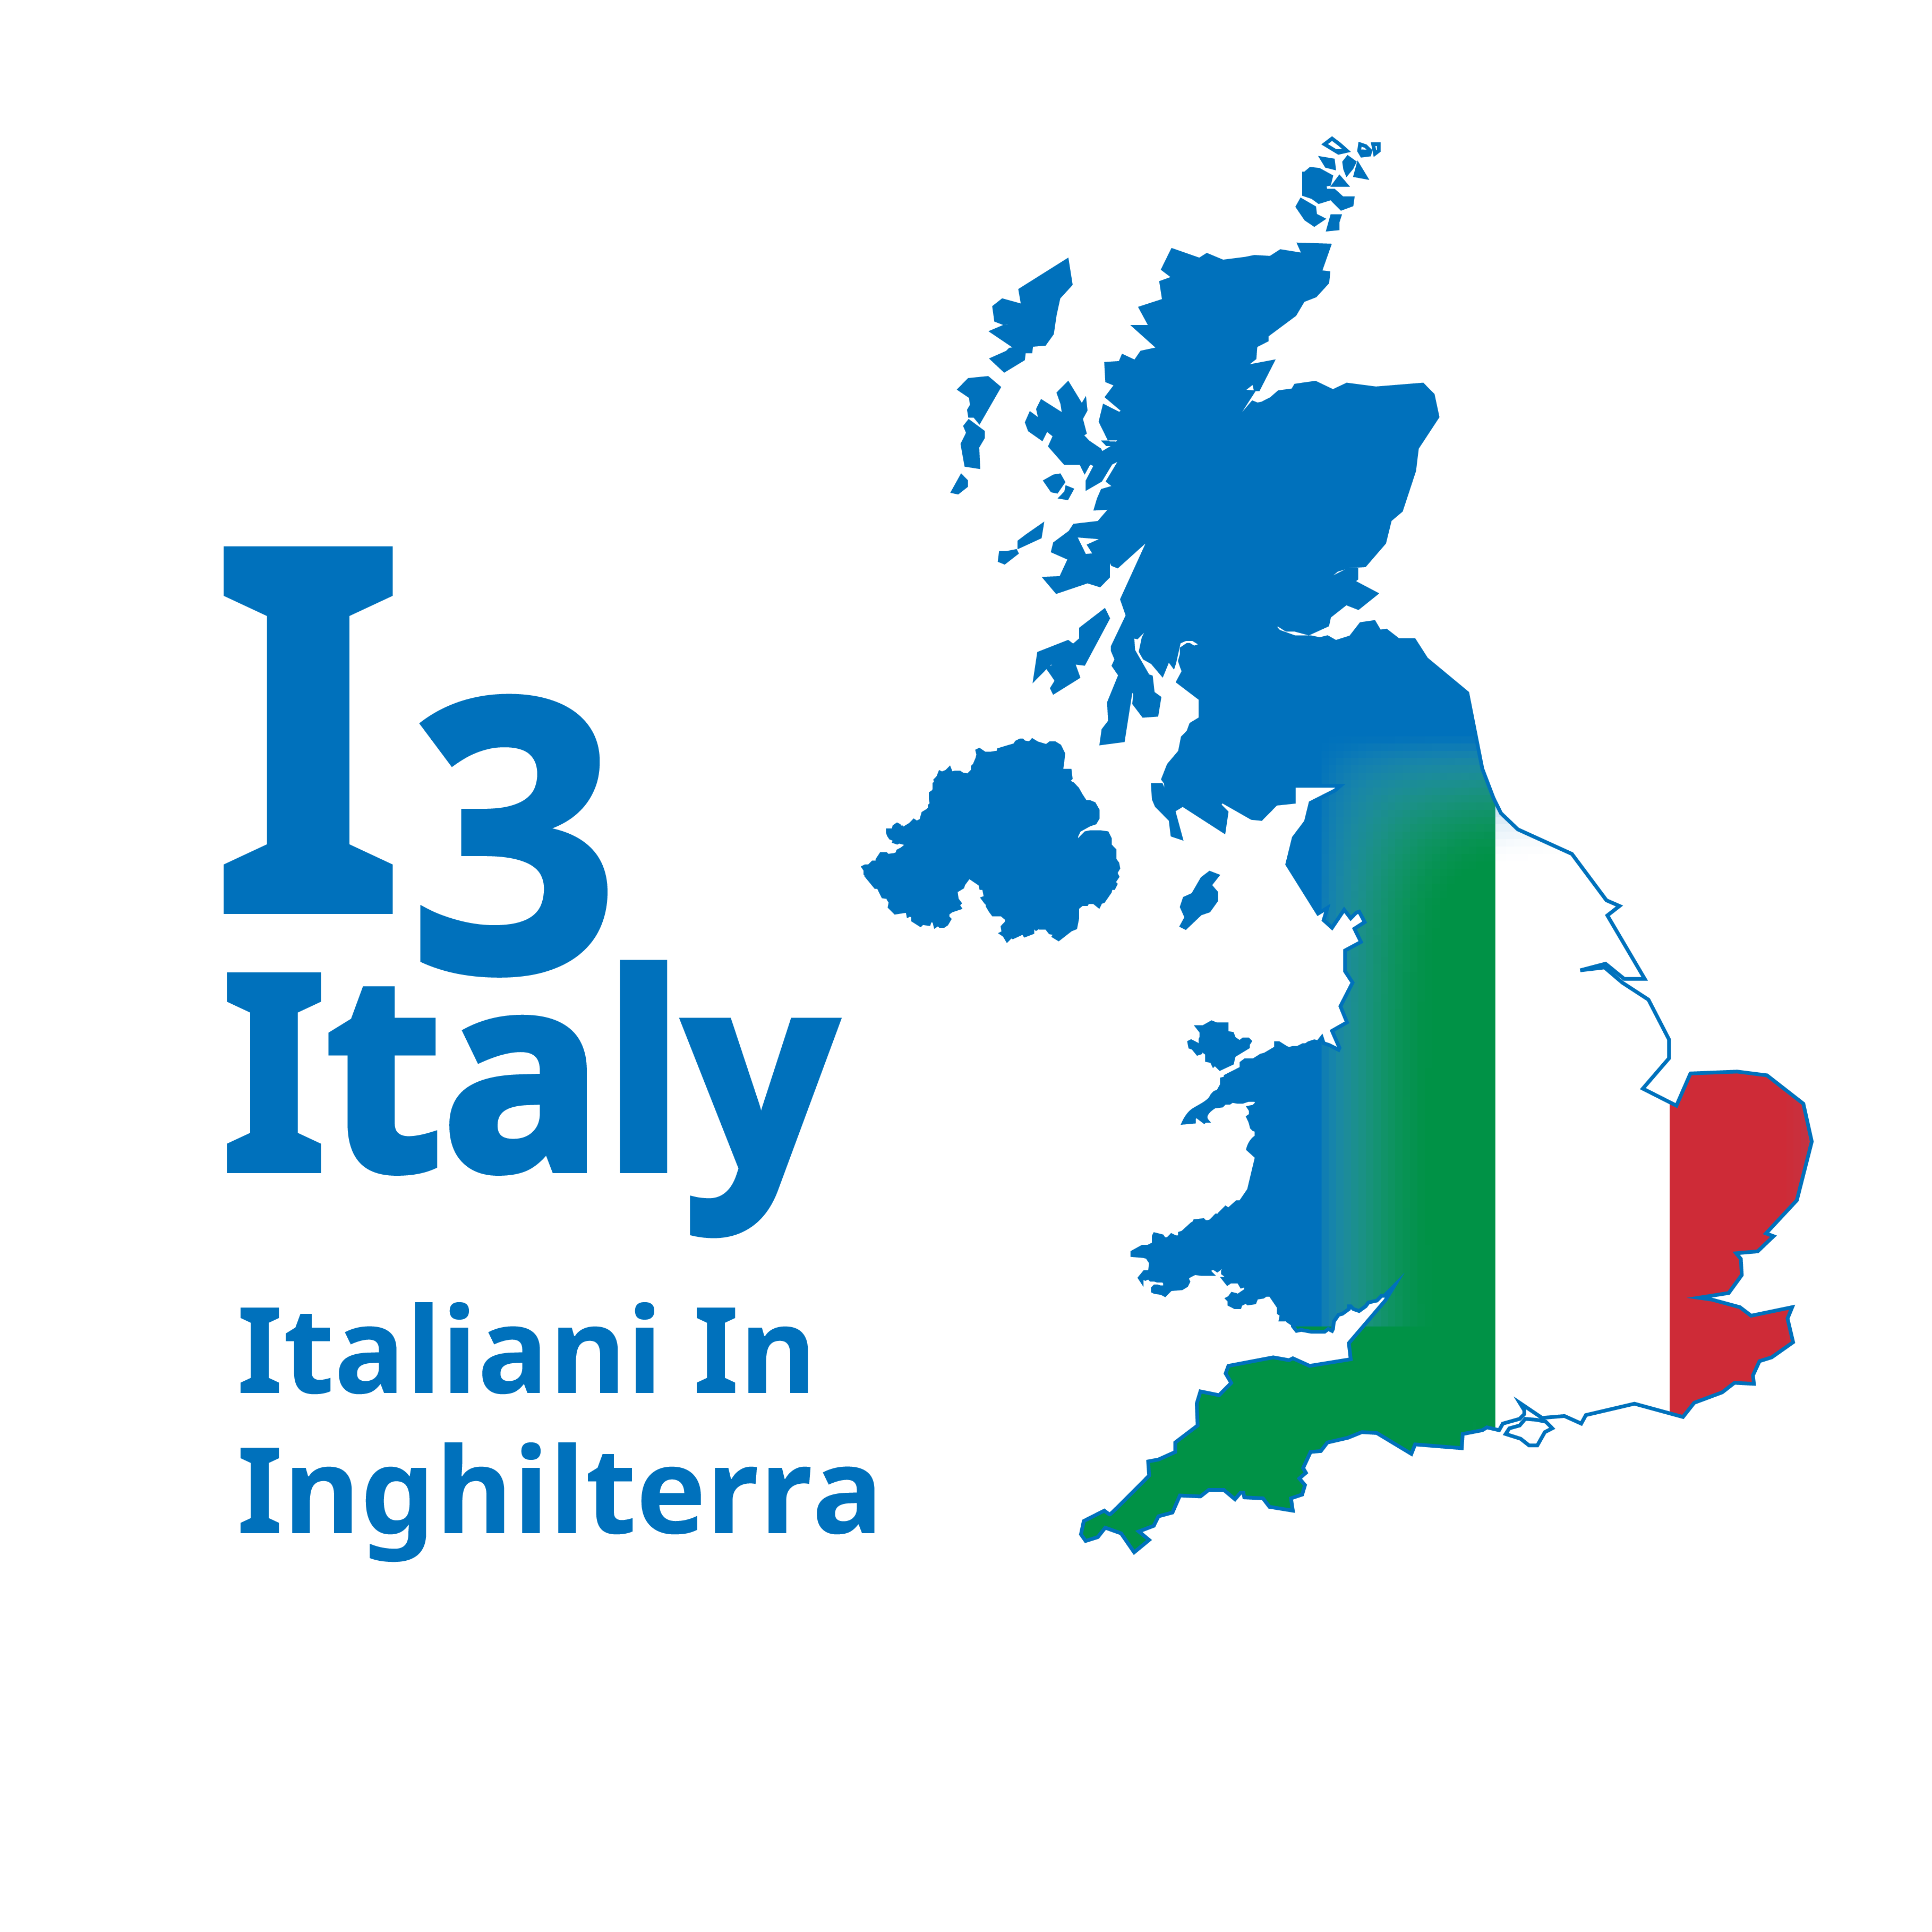 I3Italy Italiani in Inghilterra Logo